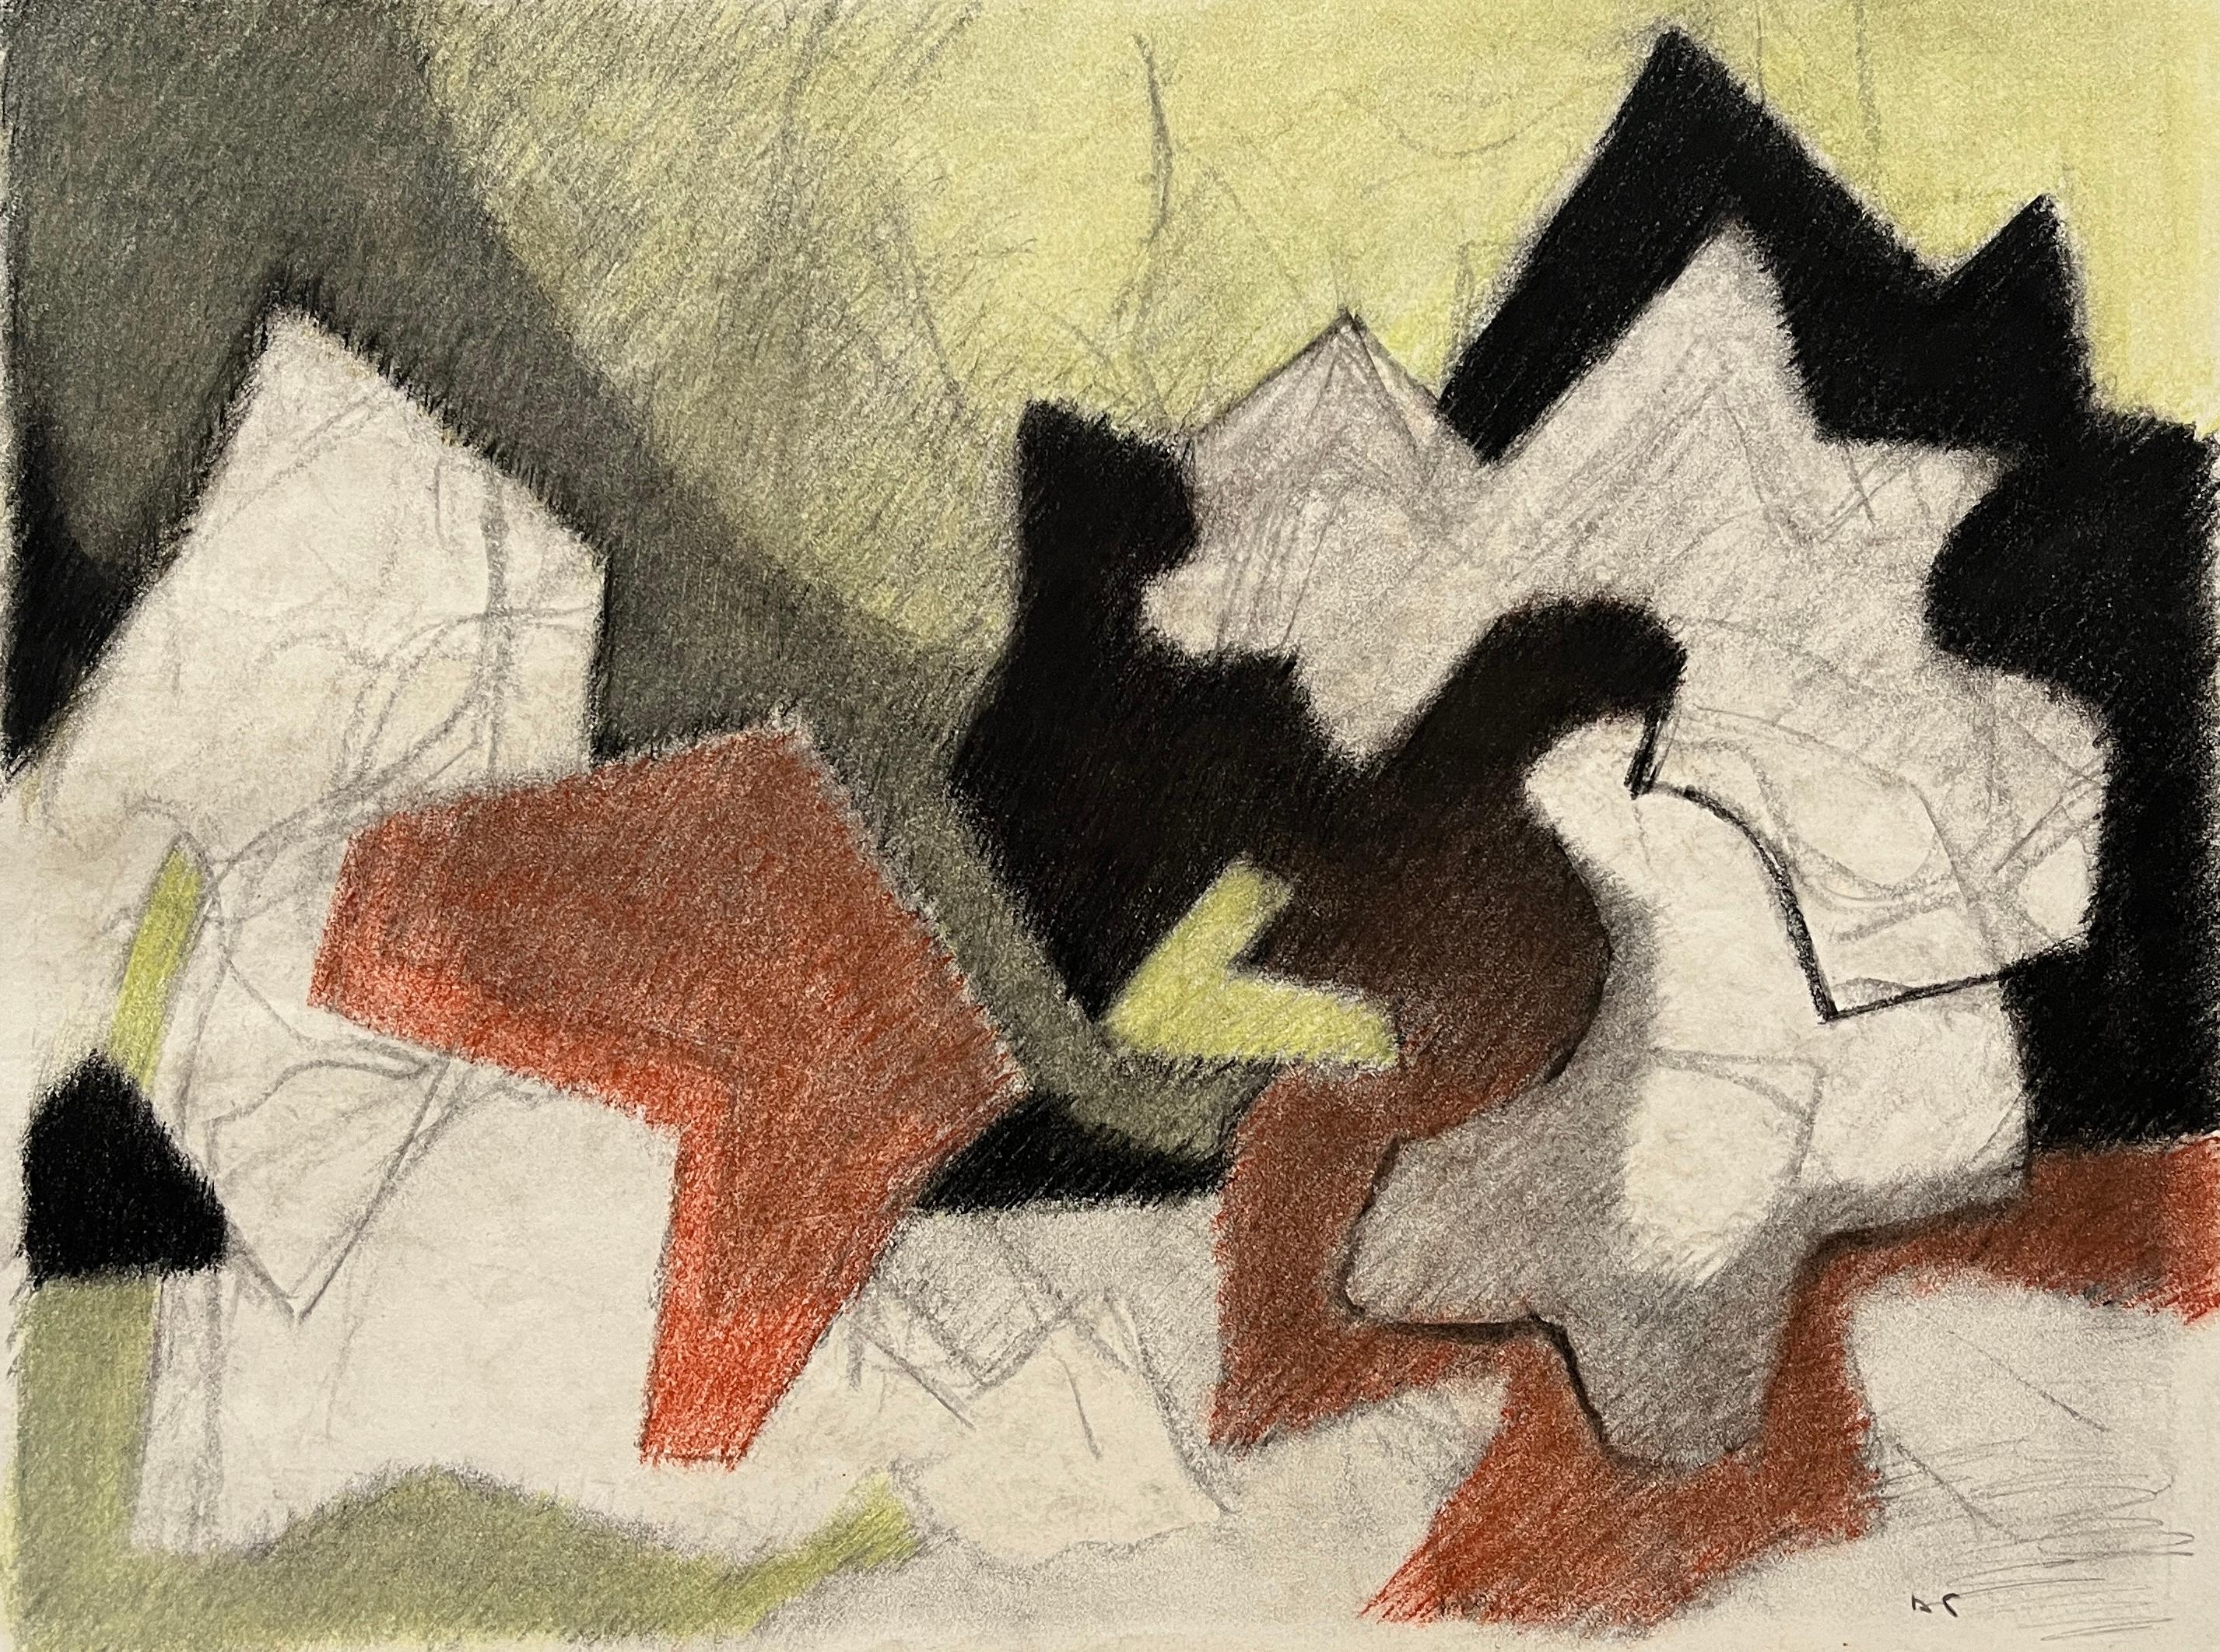 Abstract Drawing D. Tongen - Dessin abstrait au pastel doux "Jaune et noir" des années 1980